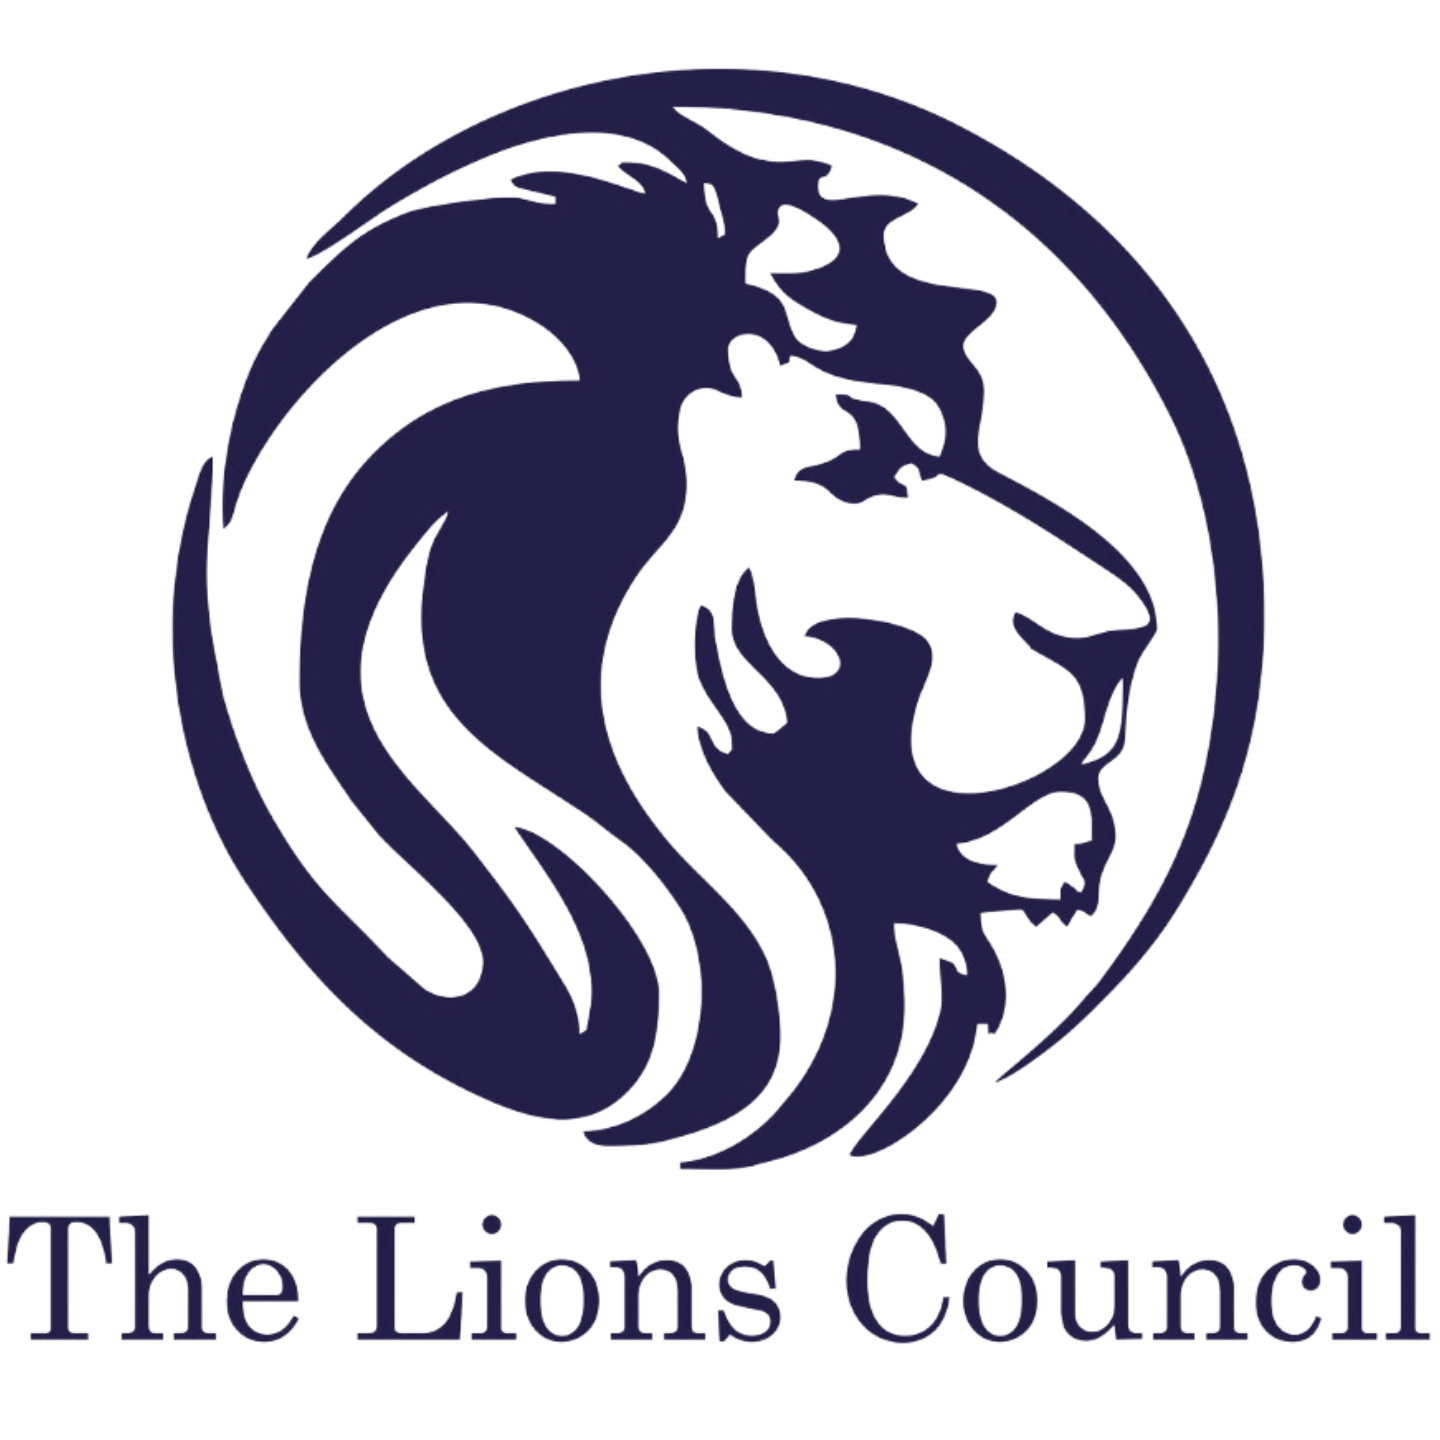 Lions Council